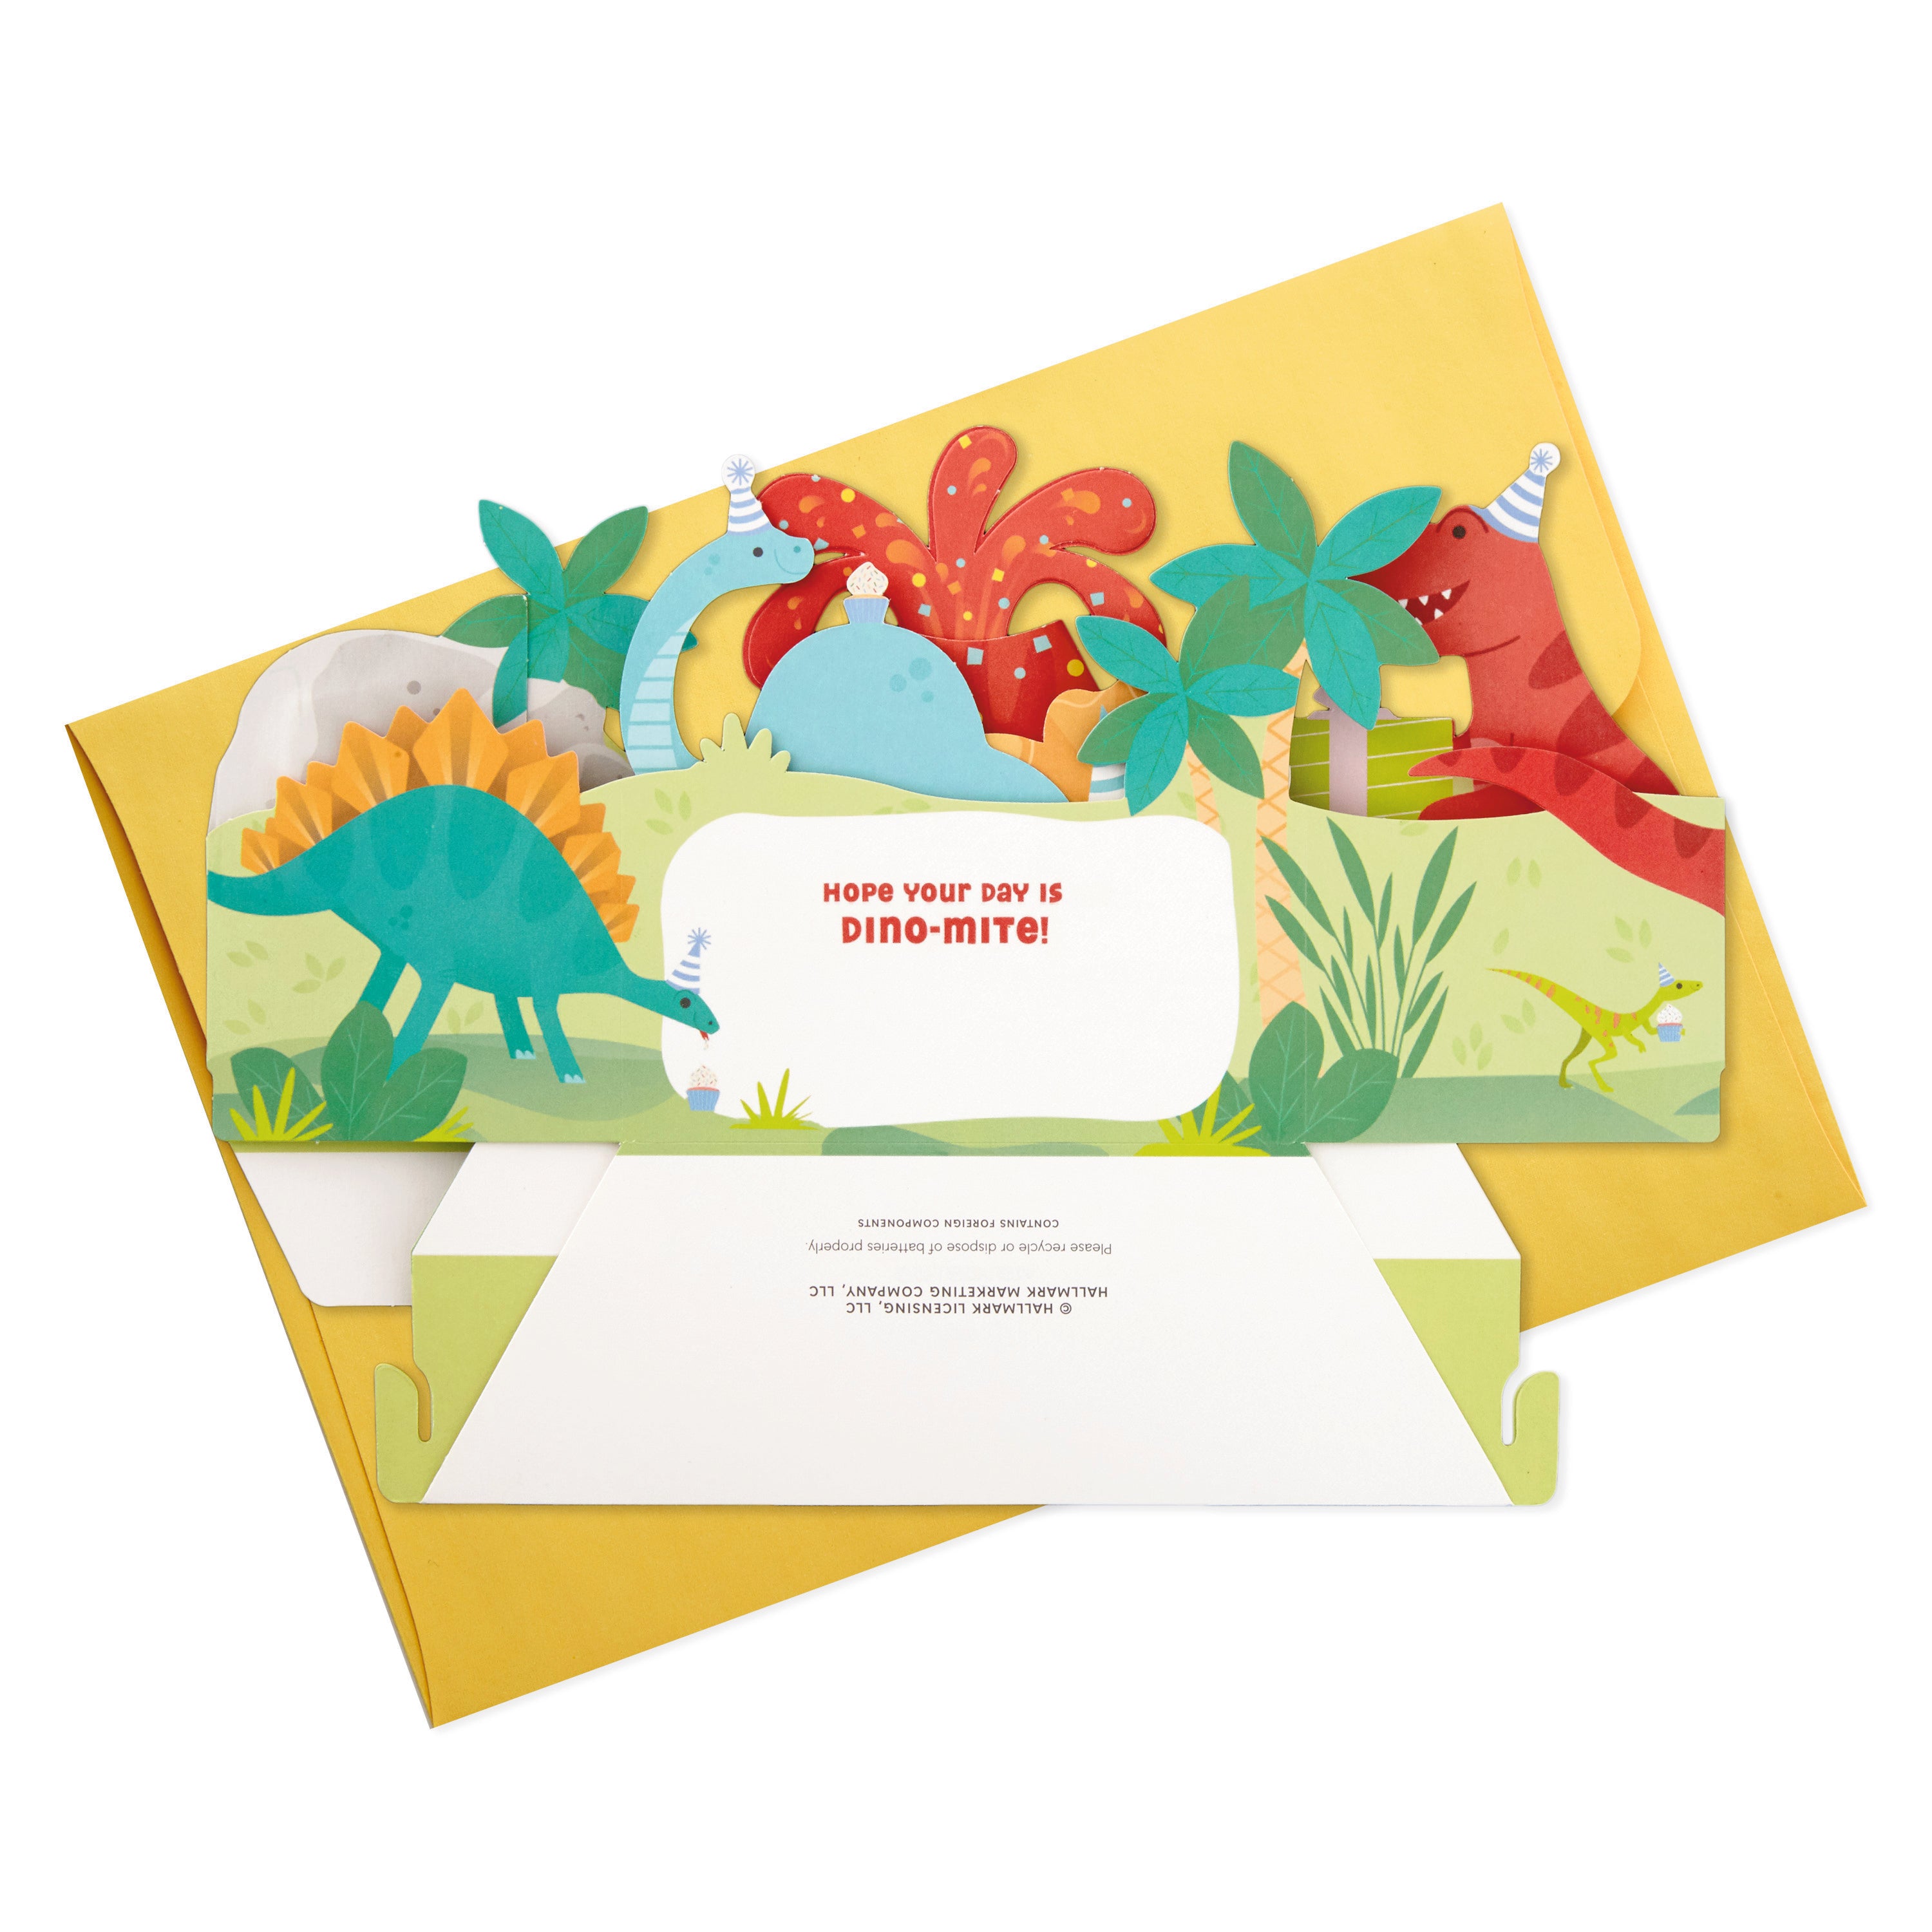 Hallmark Paper Wonder Pop Up Birthday Card for Kids with Sound (Dinosaur, Volcano)